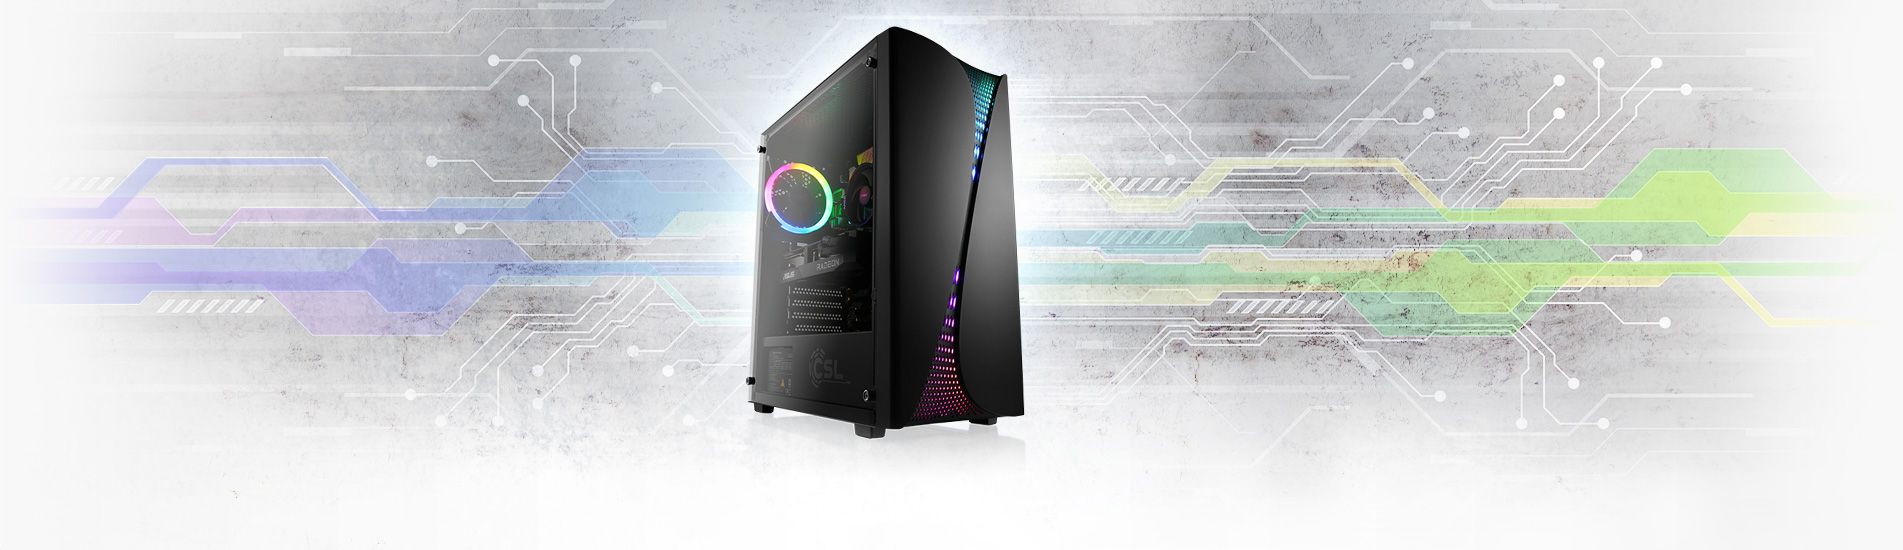 Ein starker WQHD Gaming-PC mit AMD Ryzen 5 Prozessor und Radeon RX 6700 XT Grafikkarte zum sehr attraktiven Preis!